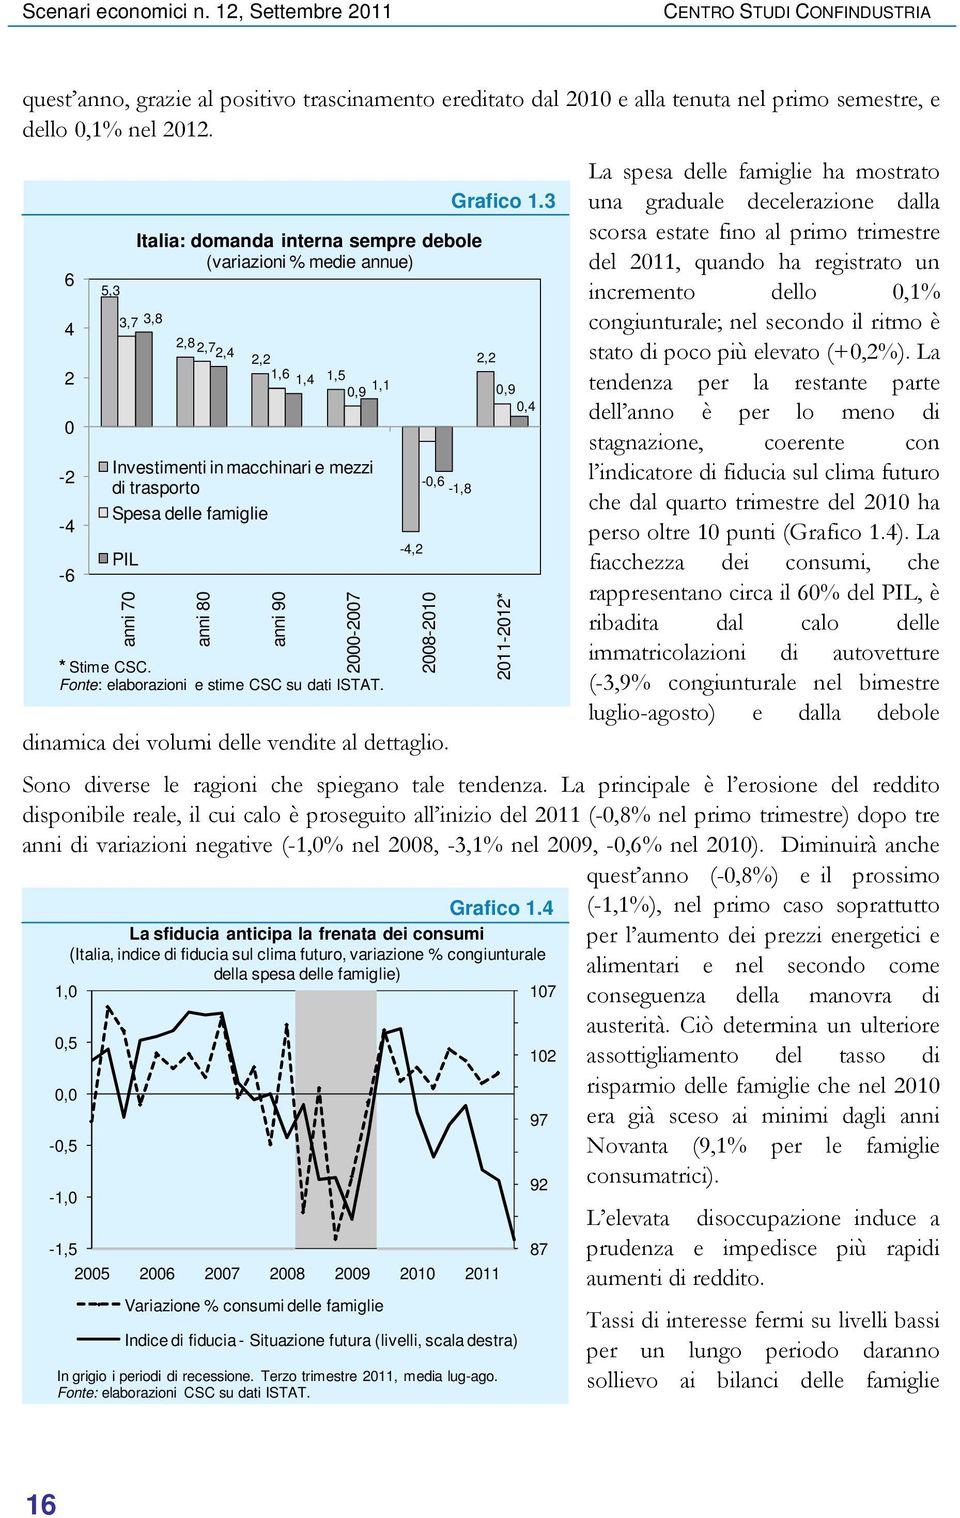 4 La sfiducia anticipa la frenata dei consumi (Italia, indice di fiducia sul clima futuro, variazione % congiunturale della spesa delle famiglie) 1,0 107 000-007 * Stime CSC.